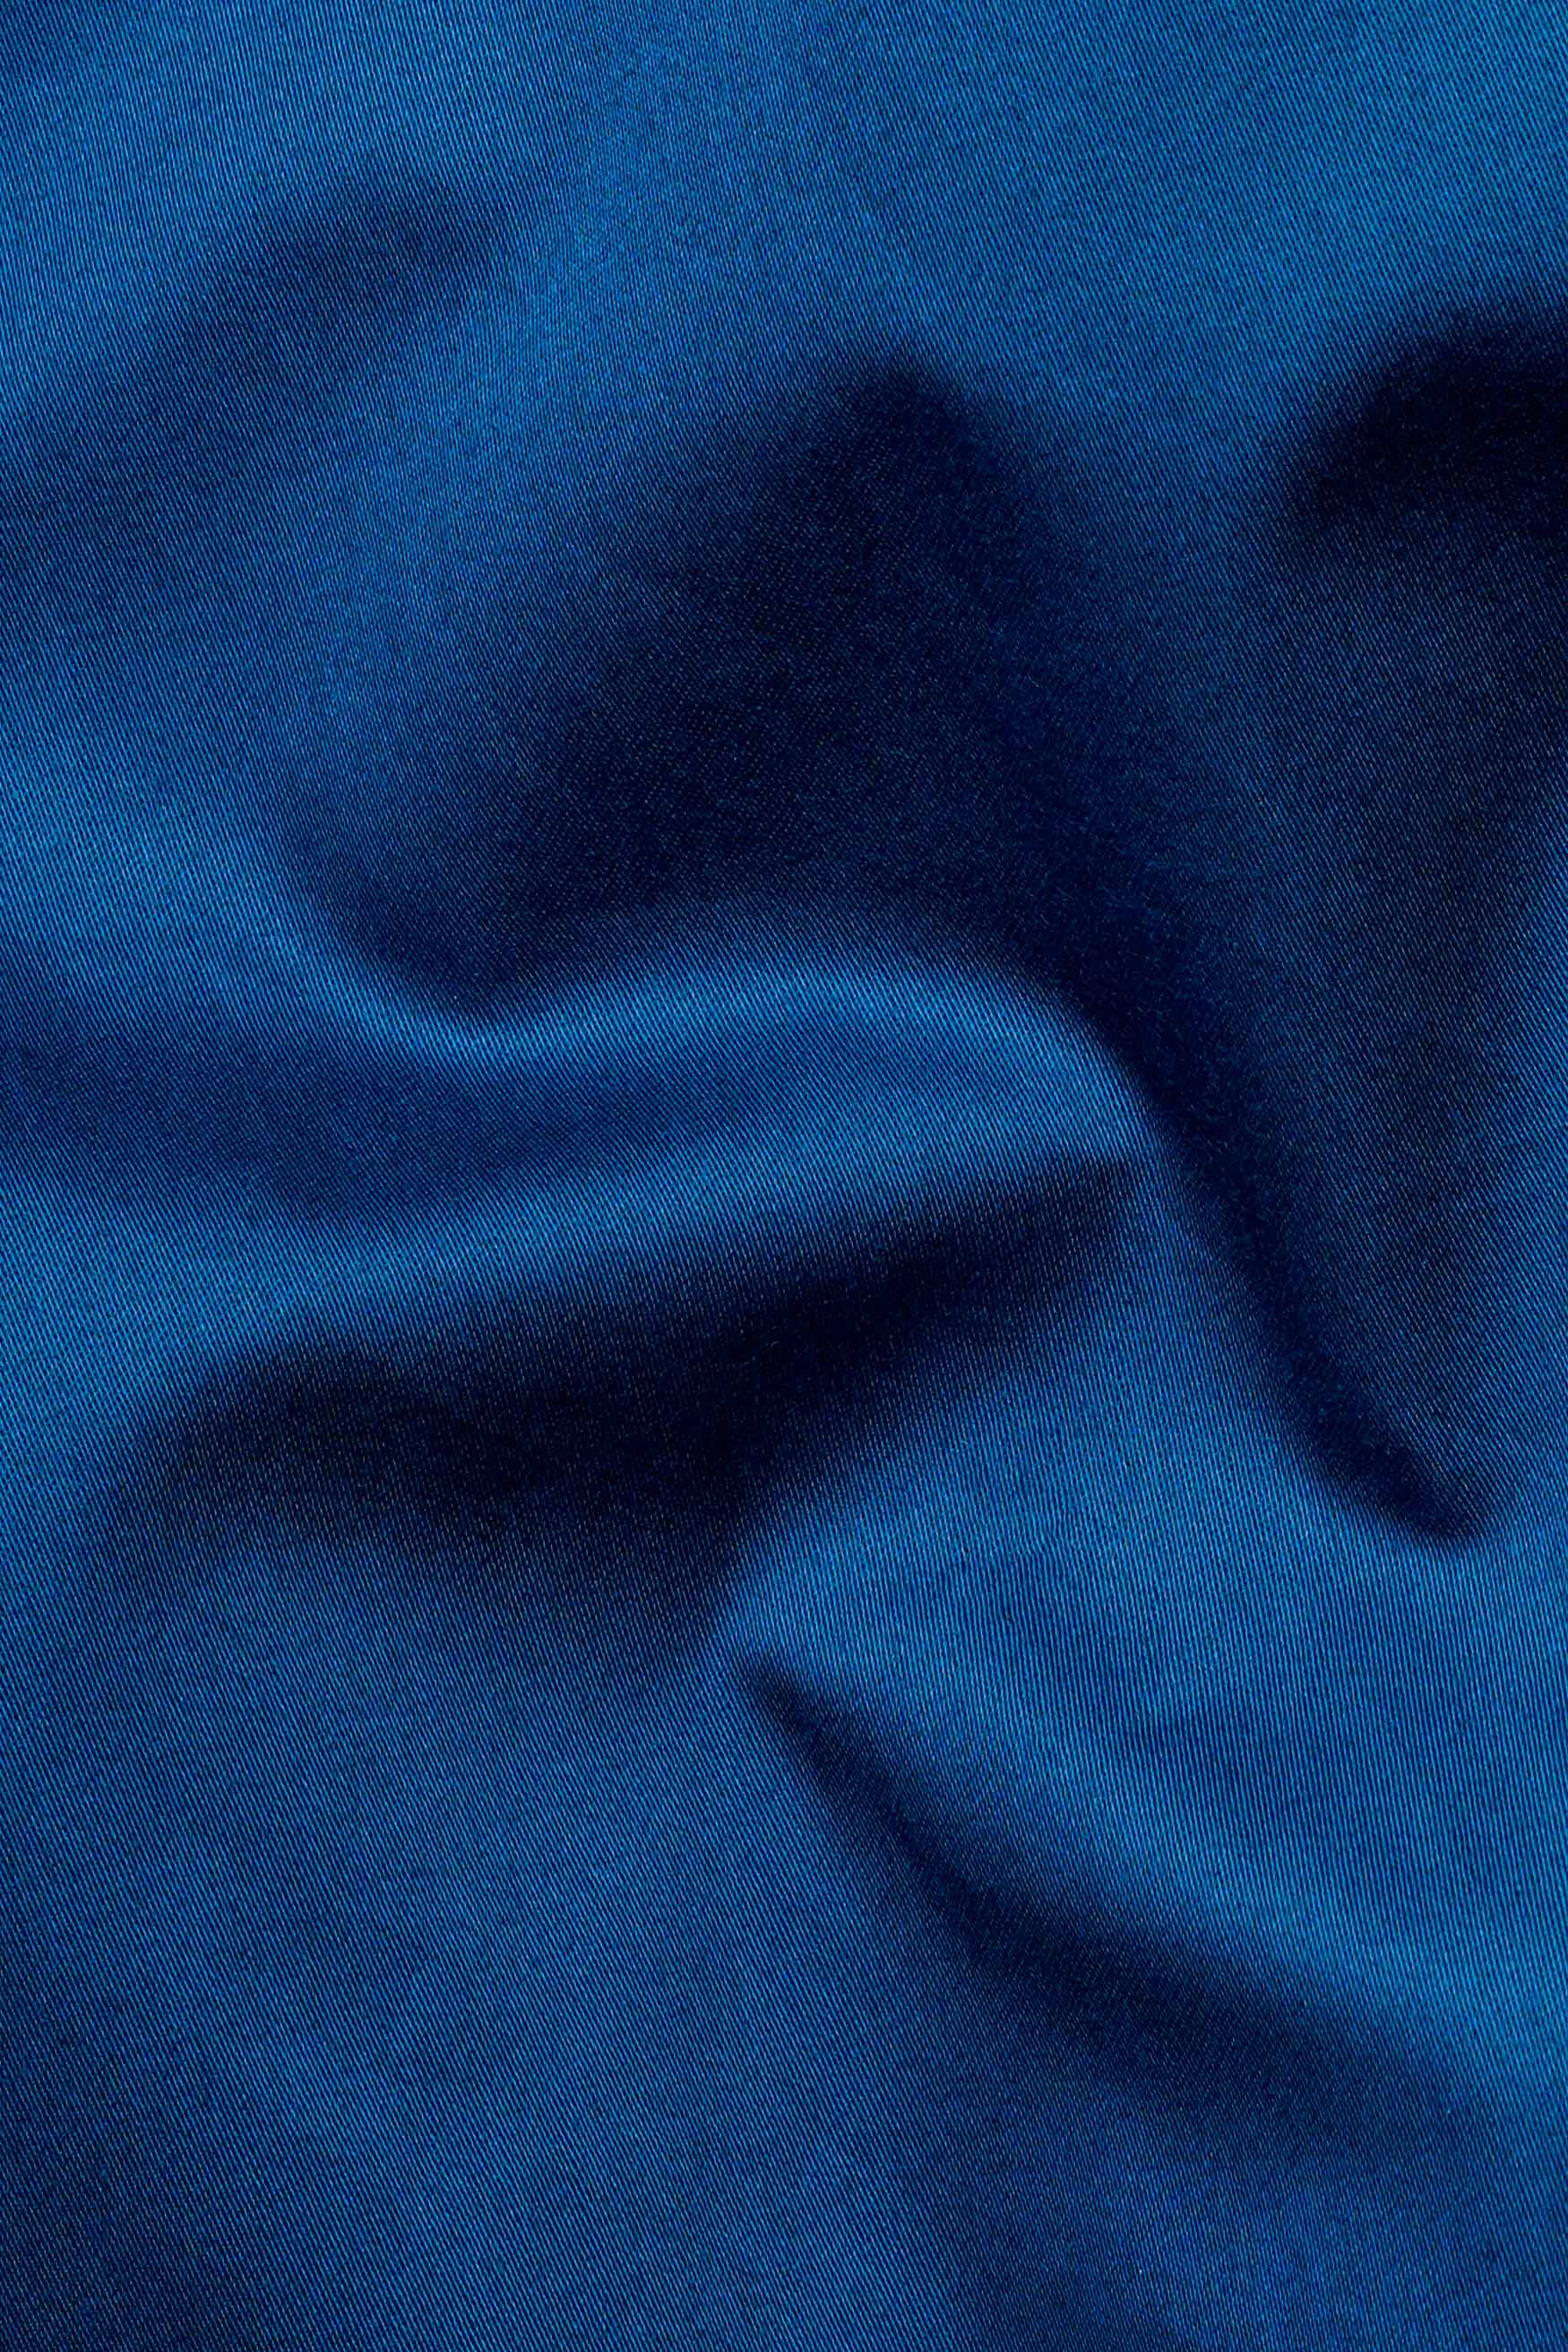 Astronaut Blue Subtle Sheen Super Soft Premium Cotton Tuxedo Shirt